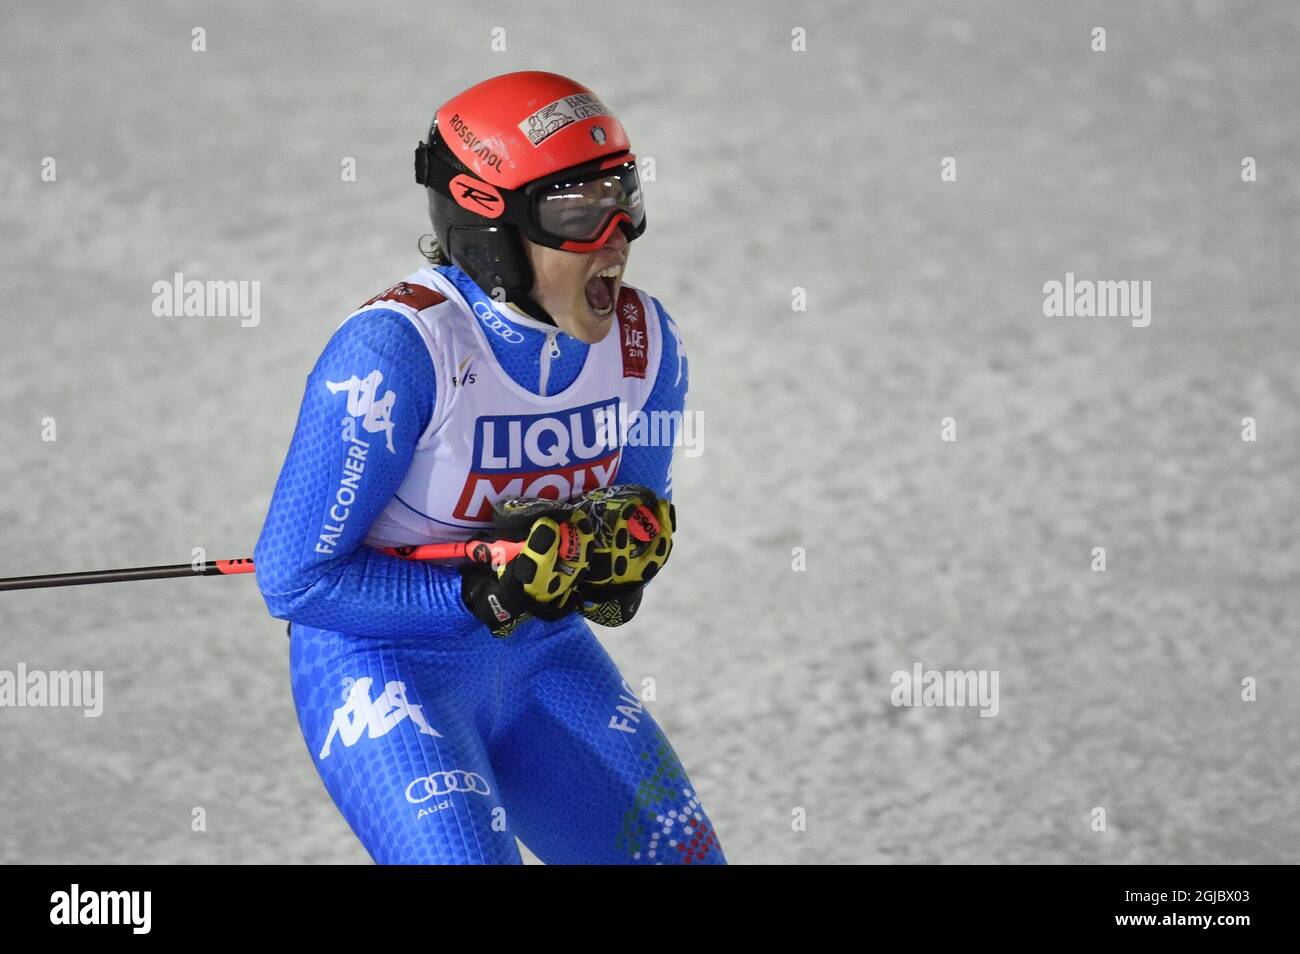 Federica Brignone di ItalyÂ si è piazzata quinta nello slalom gigante femminile al FIS Alpine Ski World Championships in are, Svezia, 14 febbraio 2019. Foto: Anders Wiklund/ TT Foto Stock